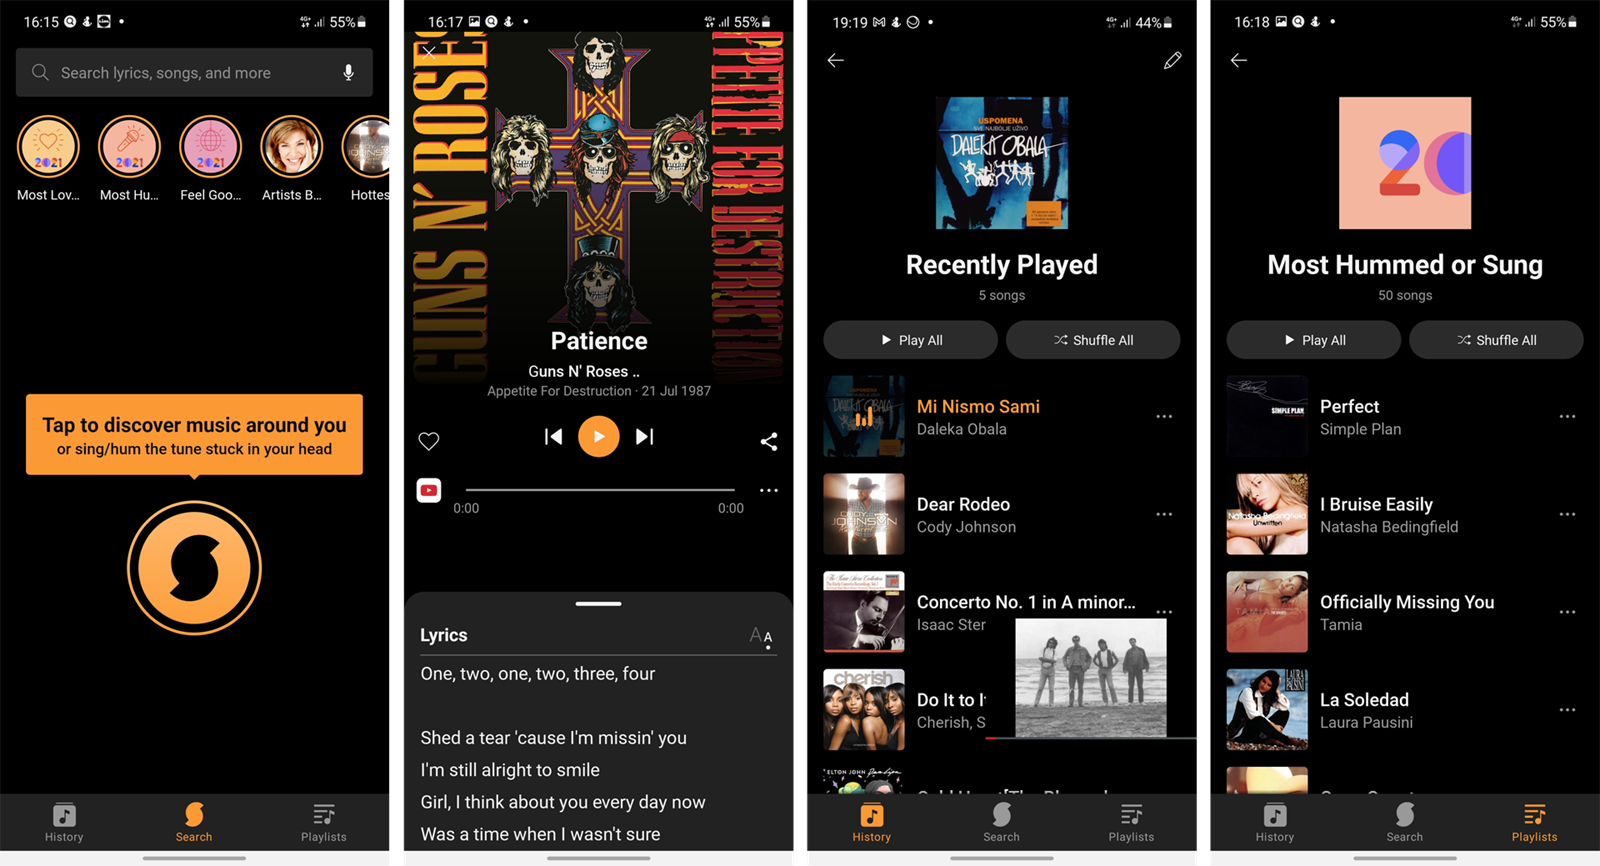 SoundHound - aplikacija za prepoznavanje glazbe i otkrivanje tekstova  pjesama - App dana @ Bug.hr